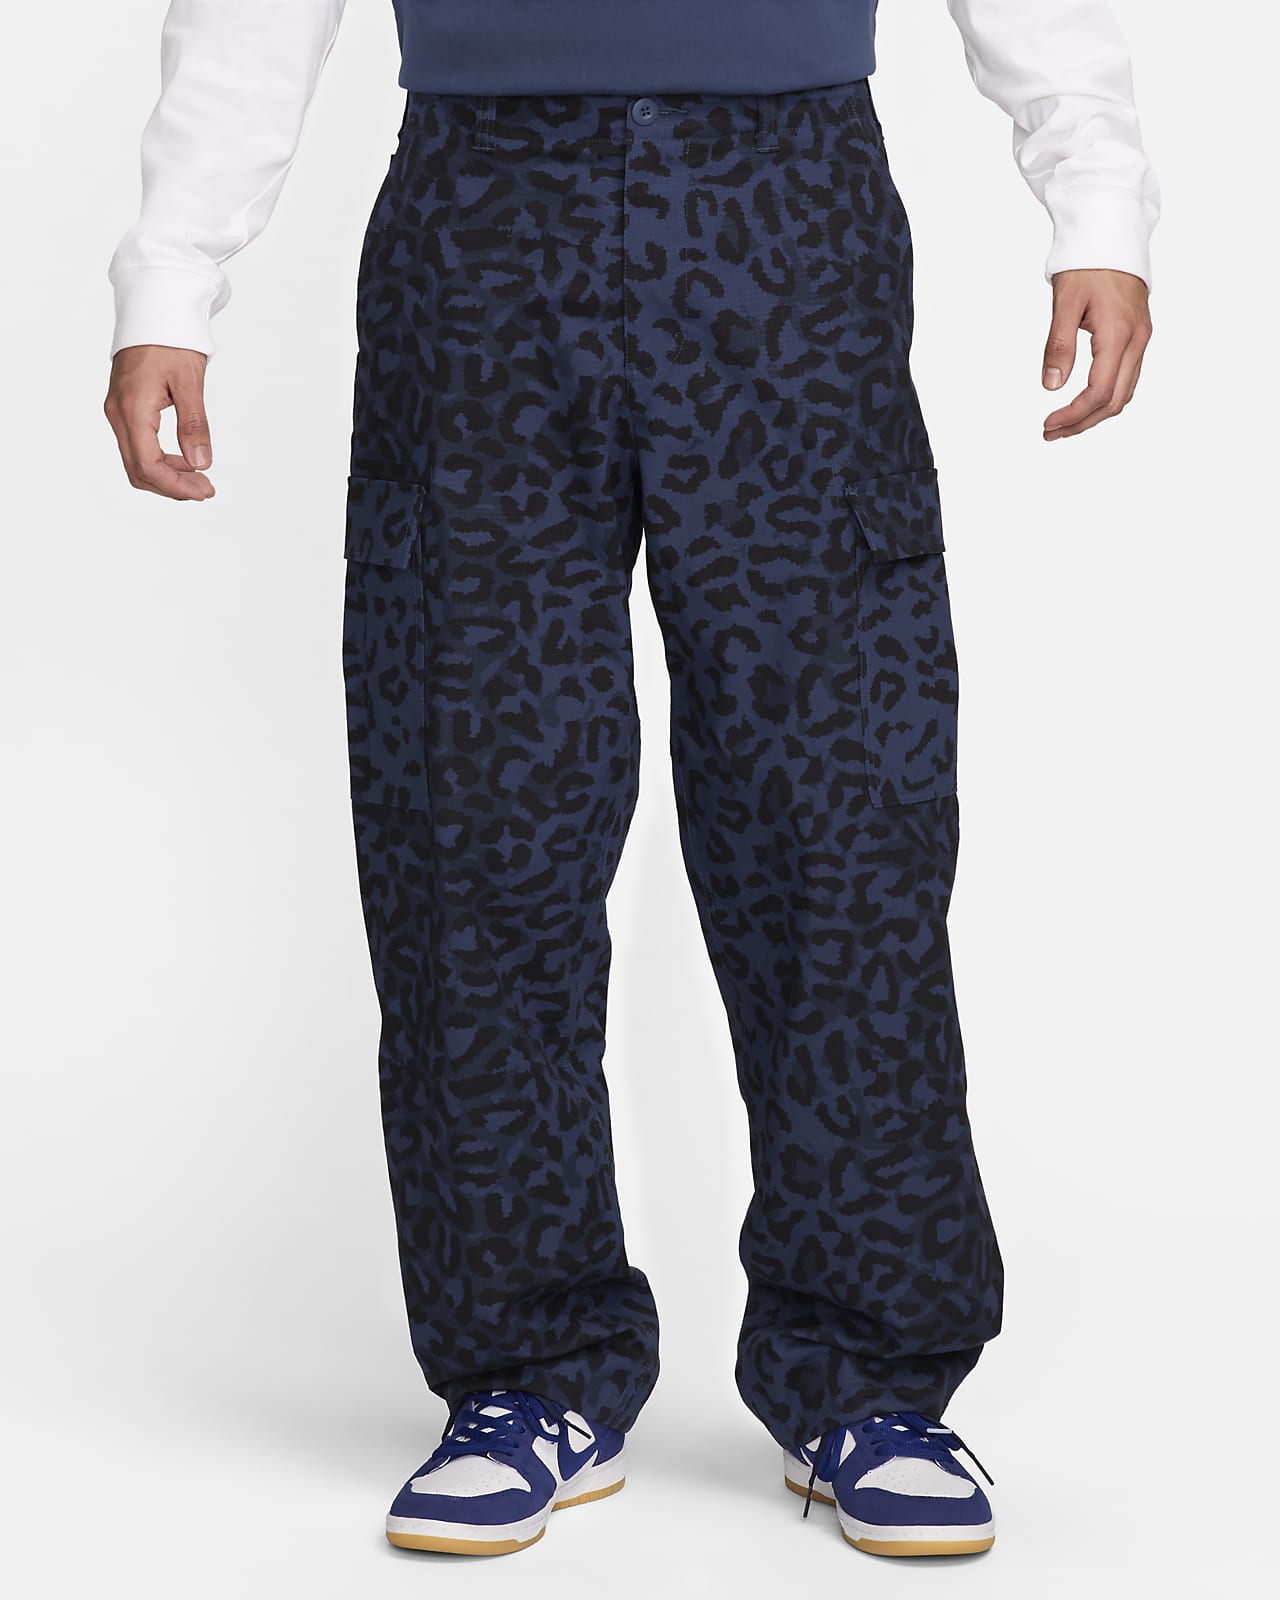 Ανδρικό cargo παντελόνι Nike SB Kearny με μοτίβο σε όλη την επιφάνεια